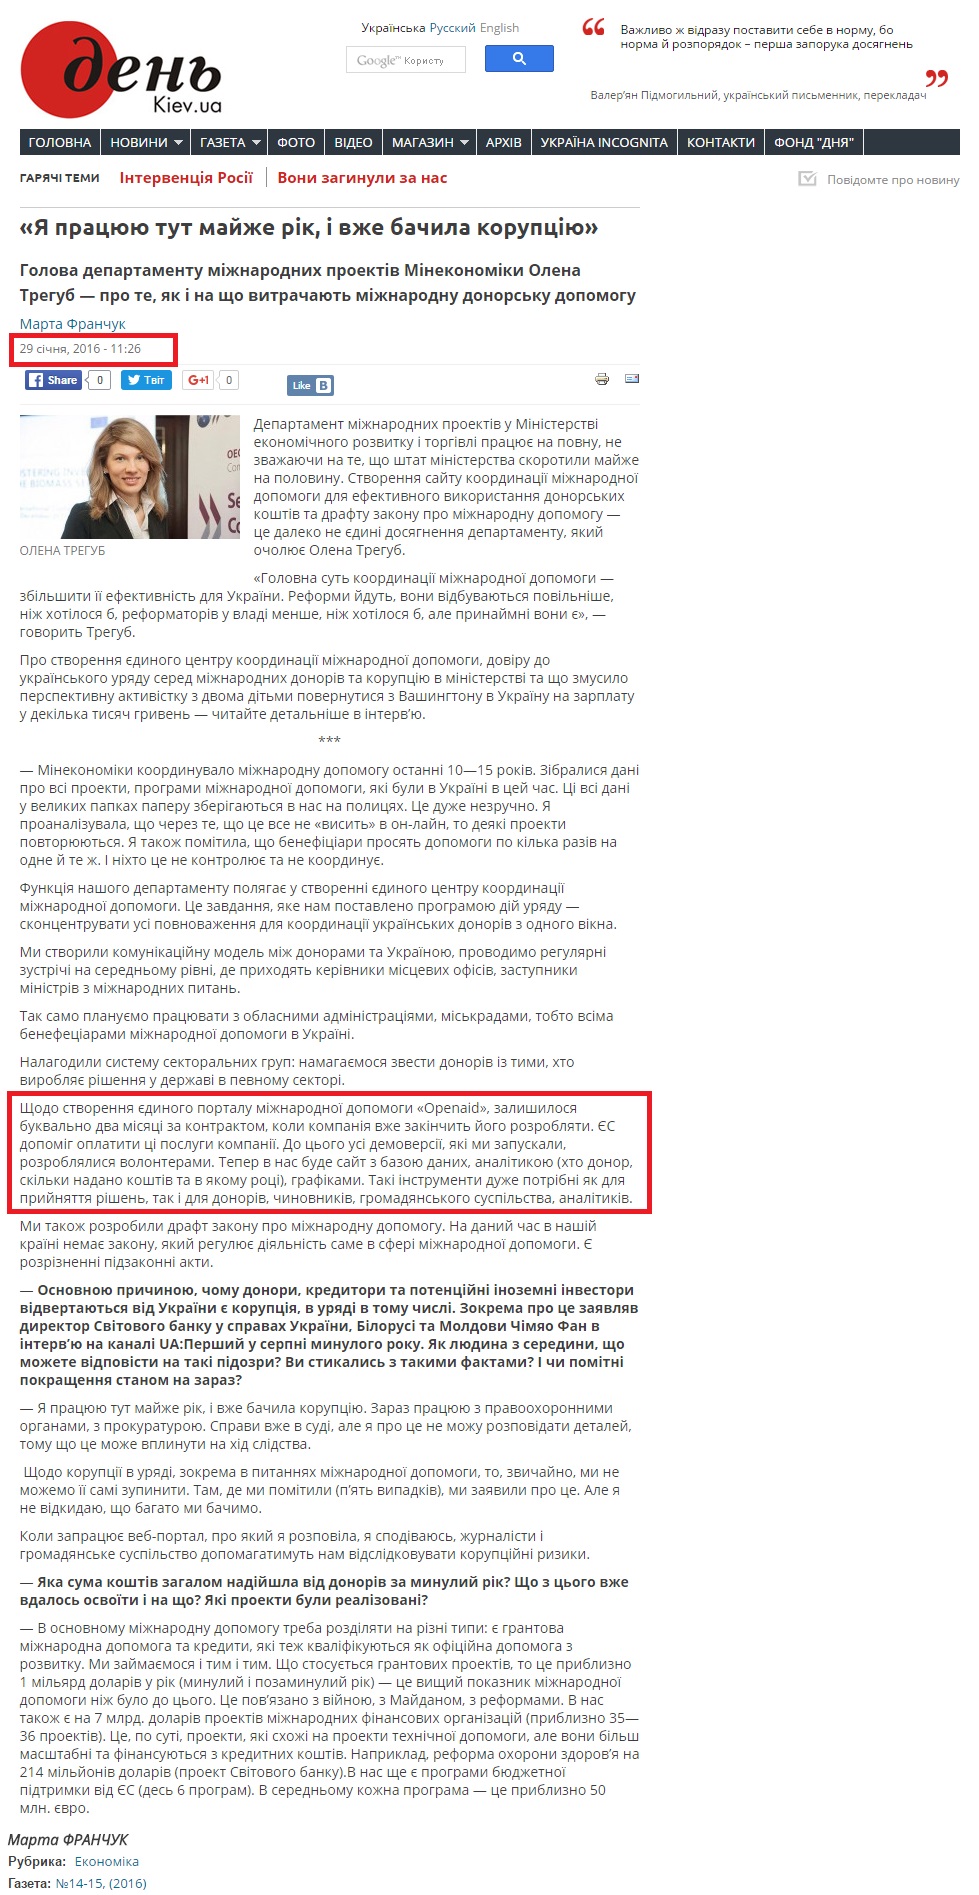 http://www.day.kiev.ua/uk/article/ekonomika/ya-pracyuyu-tut-mayzhe-rik-i-vzhe-bachyla-korupciyu